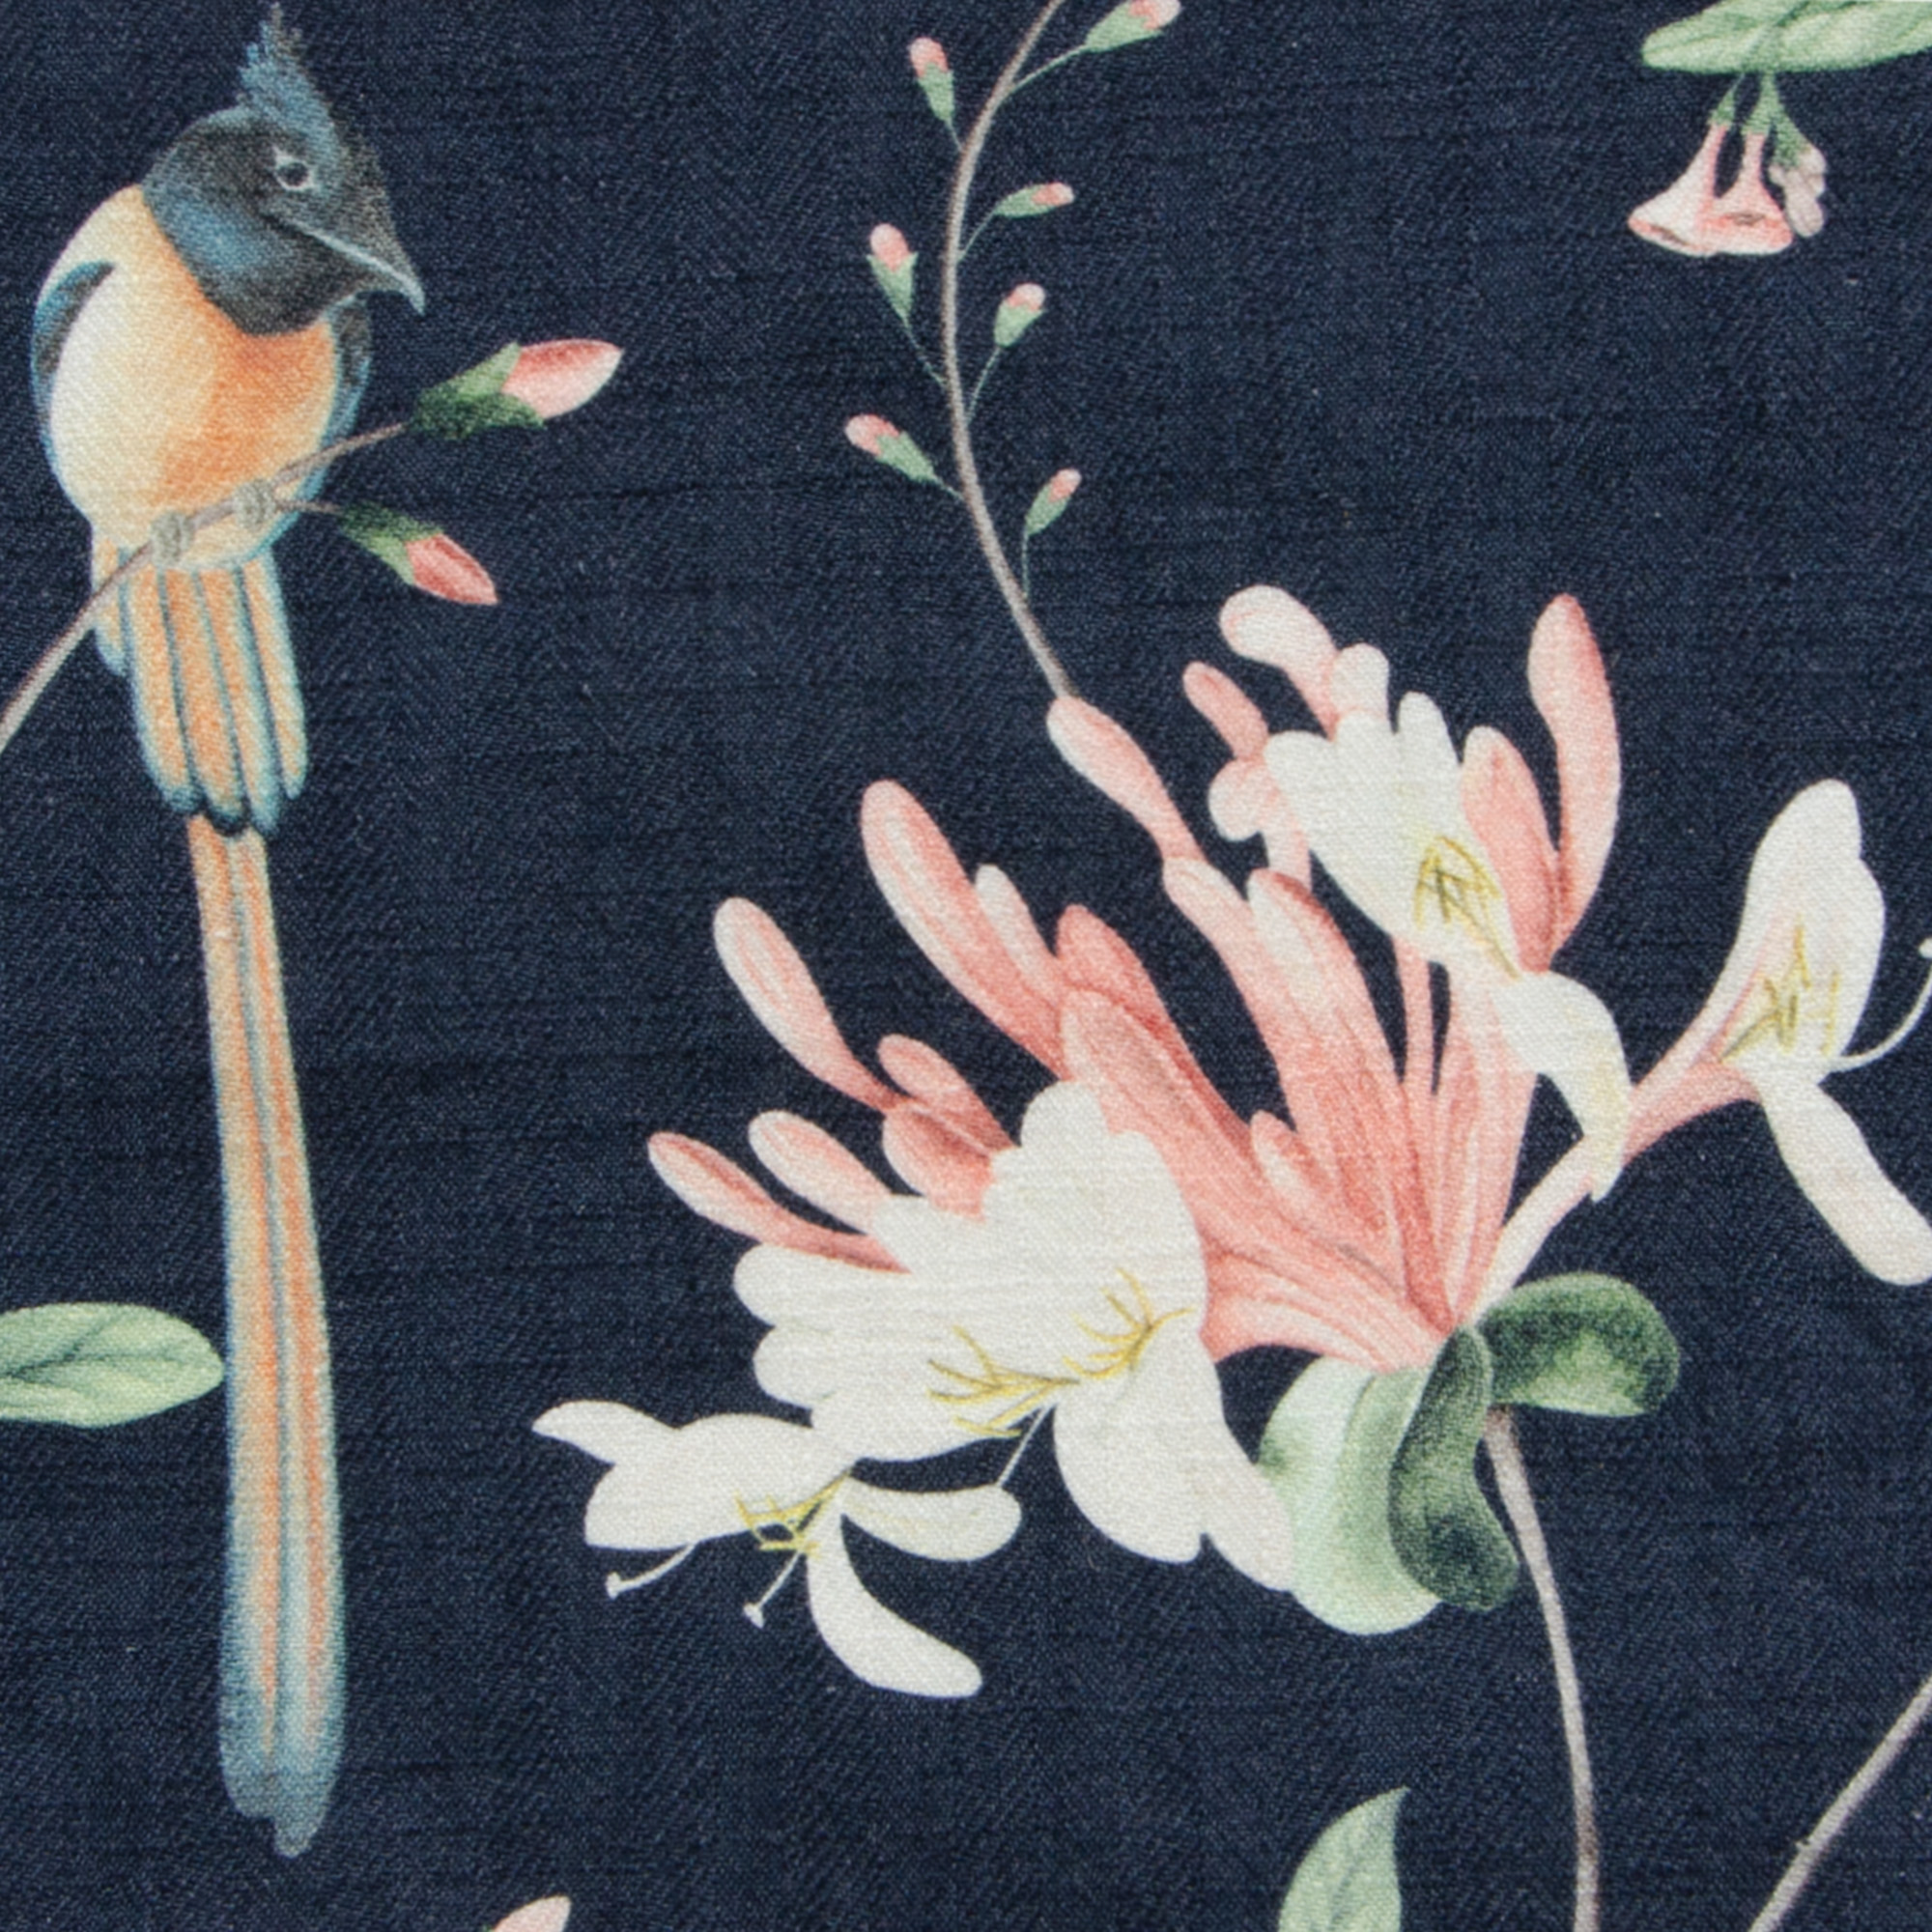 A Persian Garden Moonlit Fabric Swatch 6" x 6"